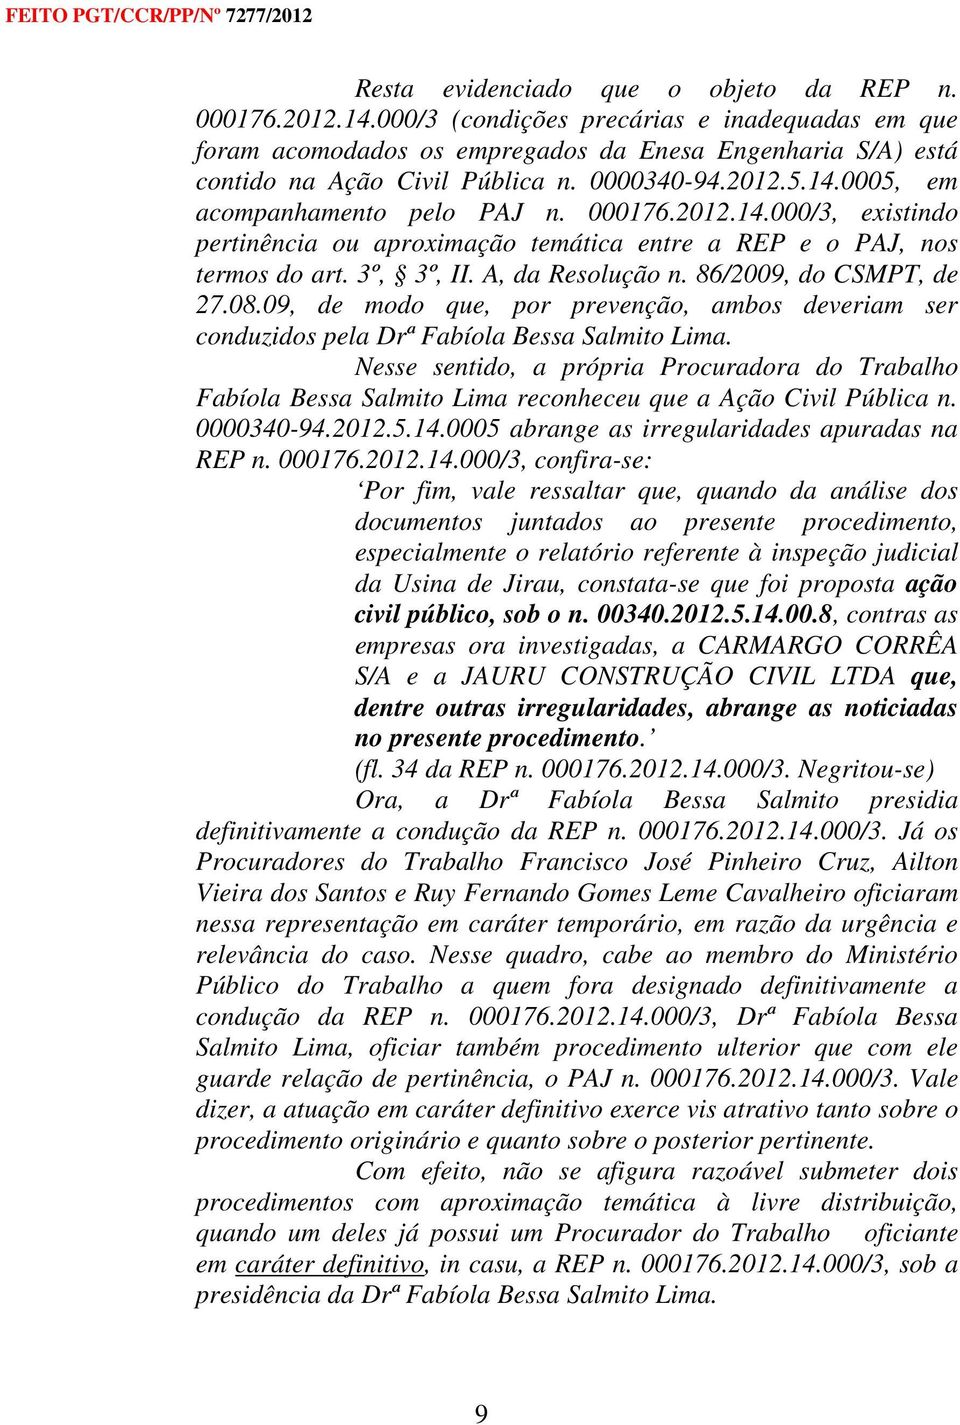 86/2009, do CSMPT, de 27.08.09, de modo que, por prevenção, ambos deveriam ser conduzidos pela Drª Fabíola Bessa Salmito Lima.